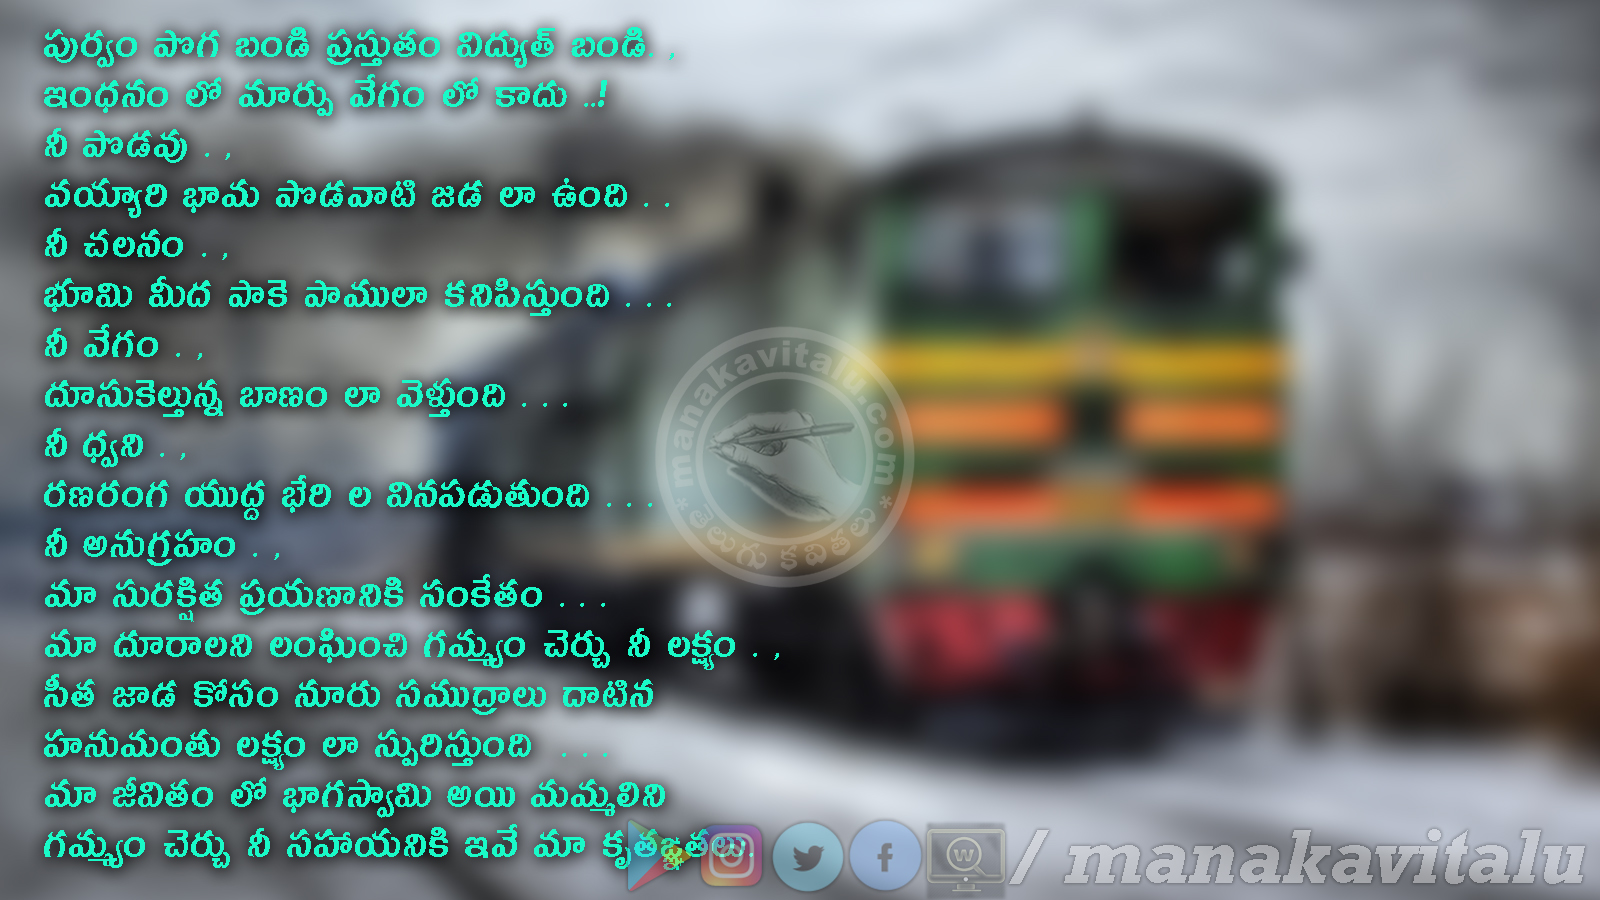 train journey quotes in telugu